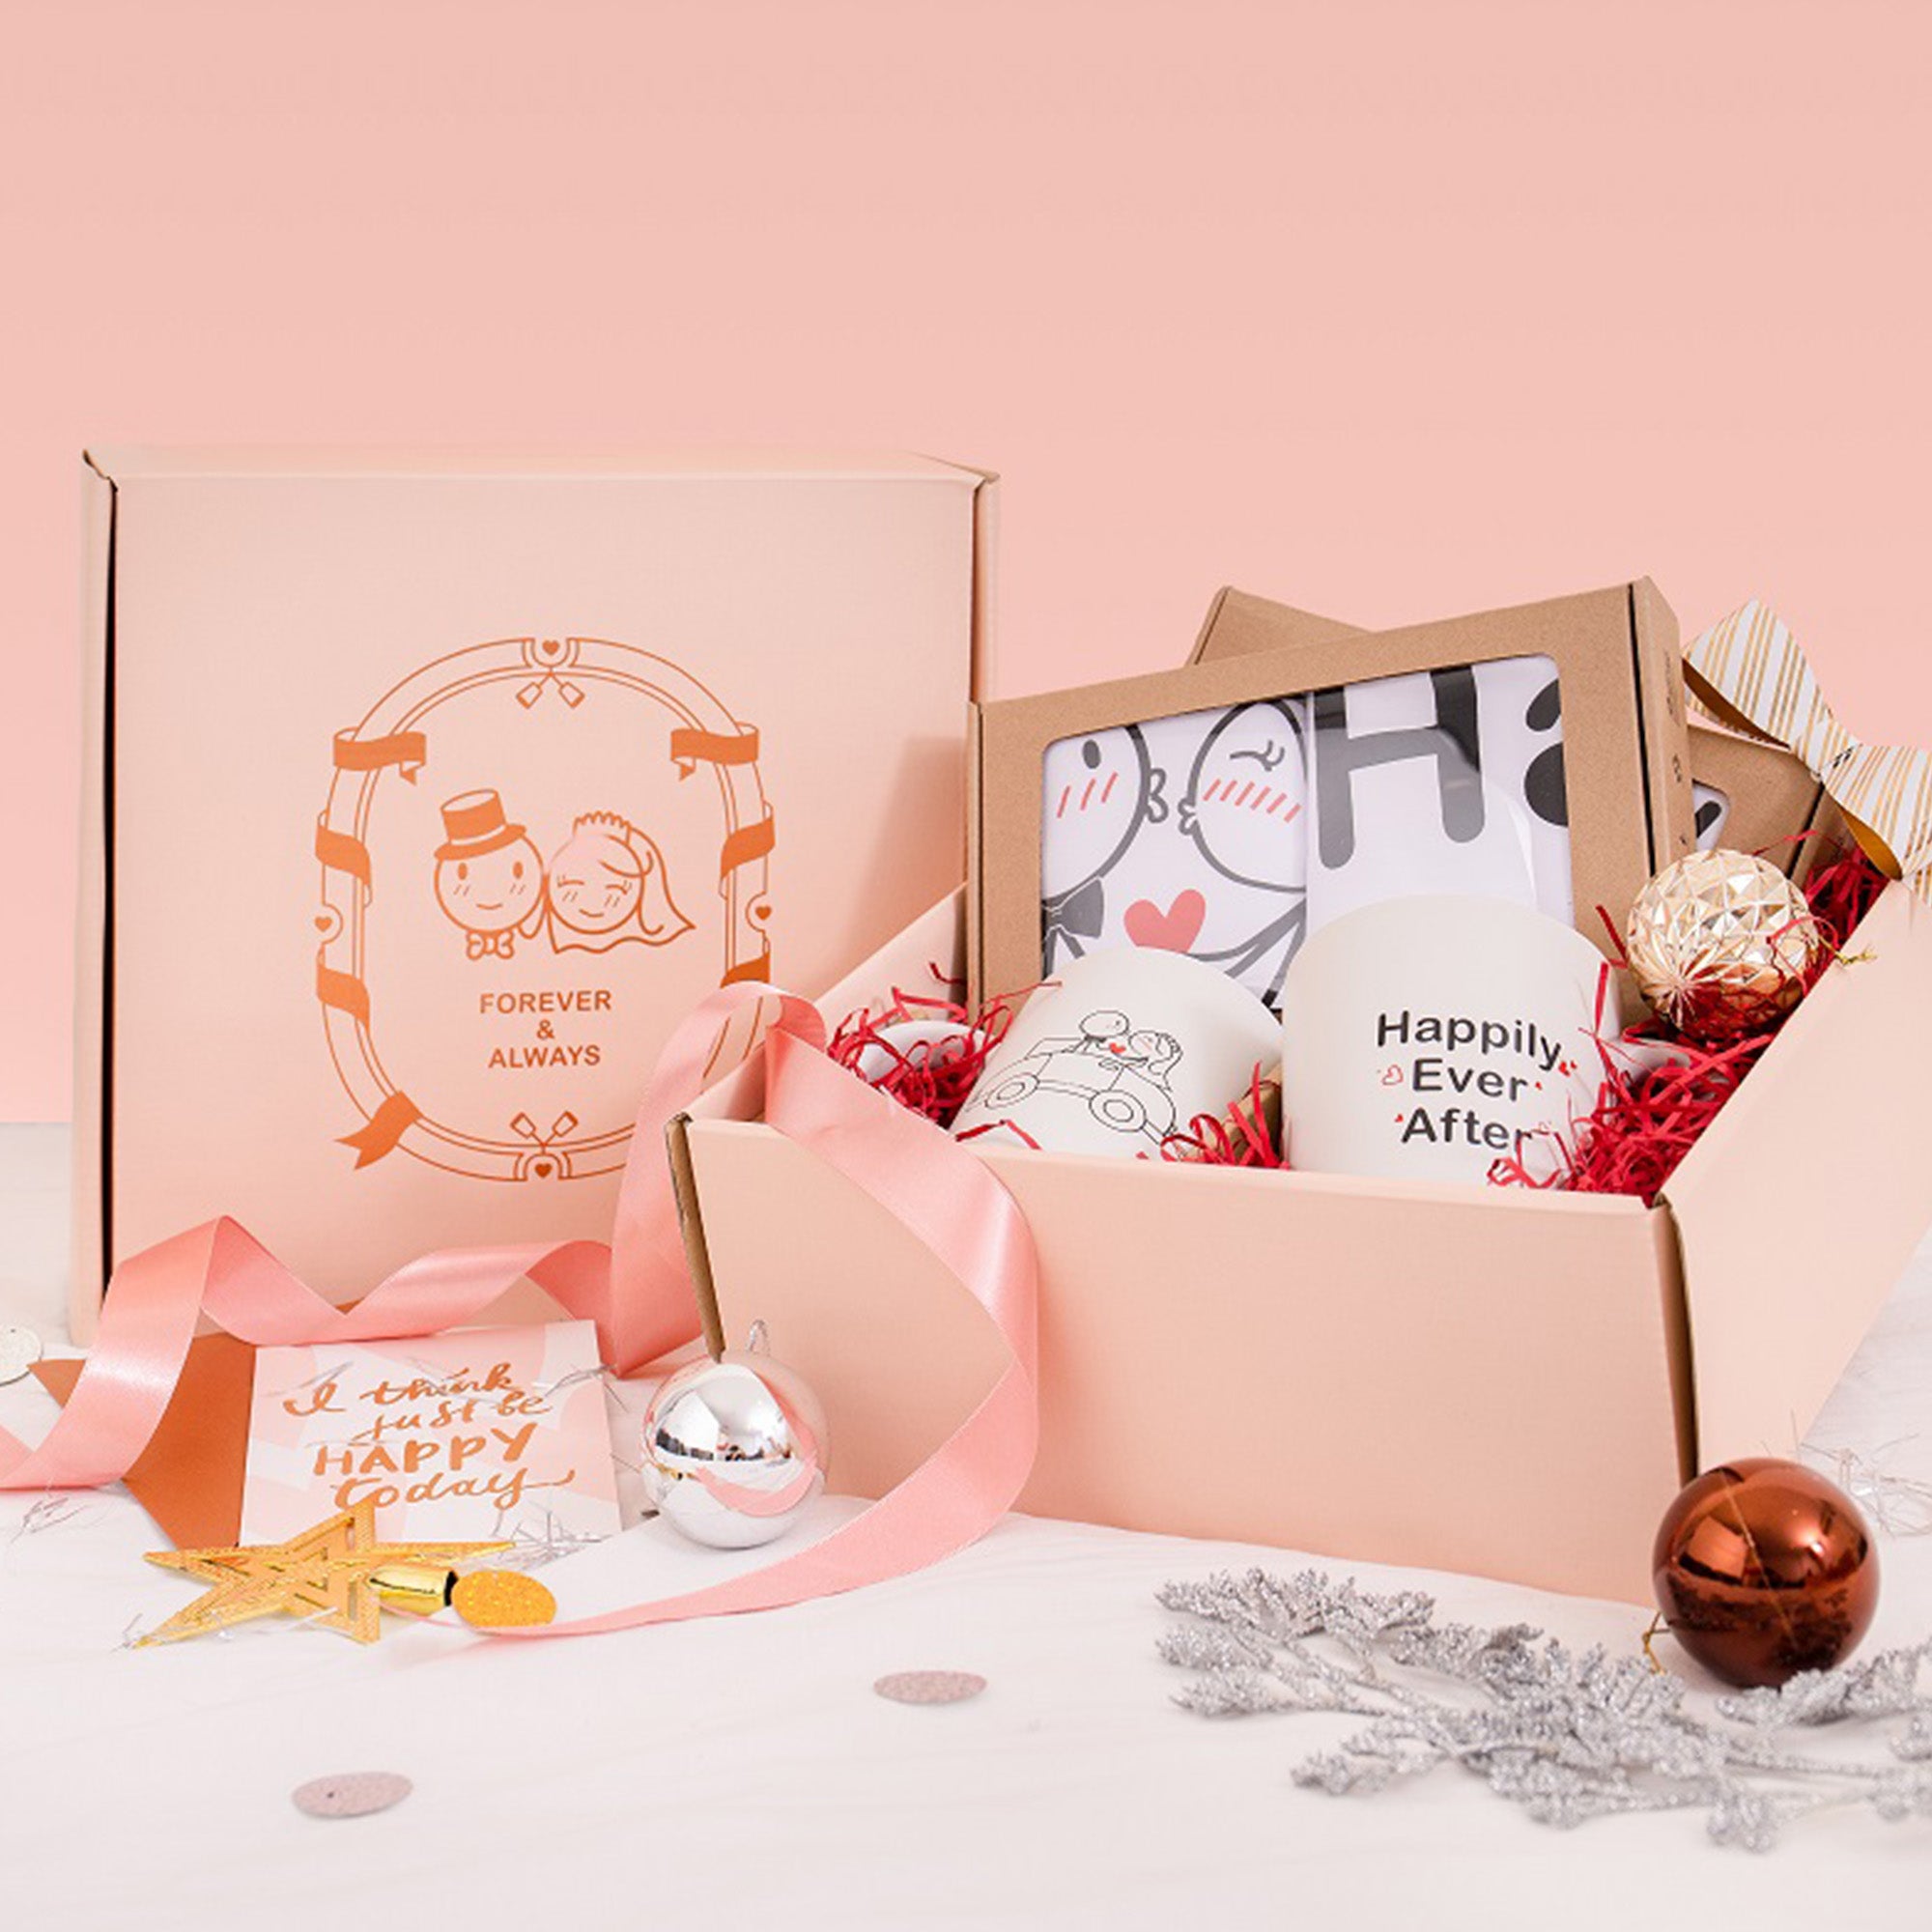 Gift Box Full of Love